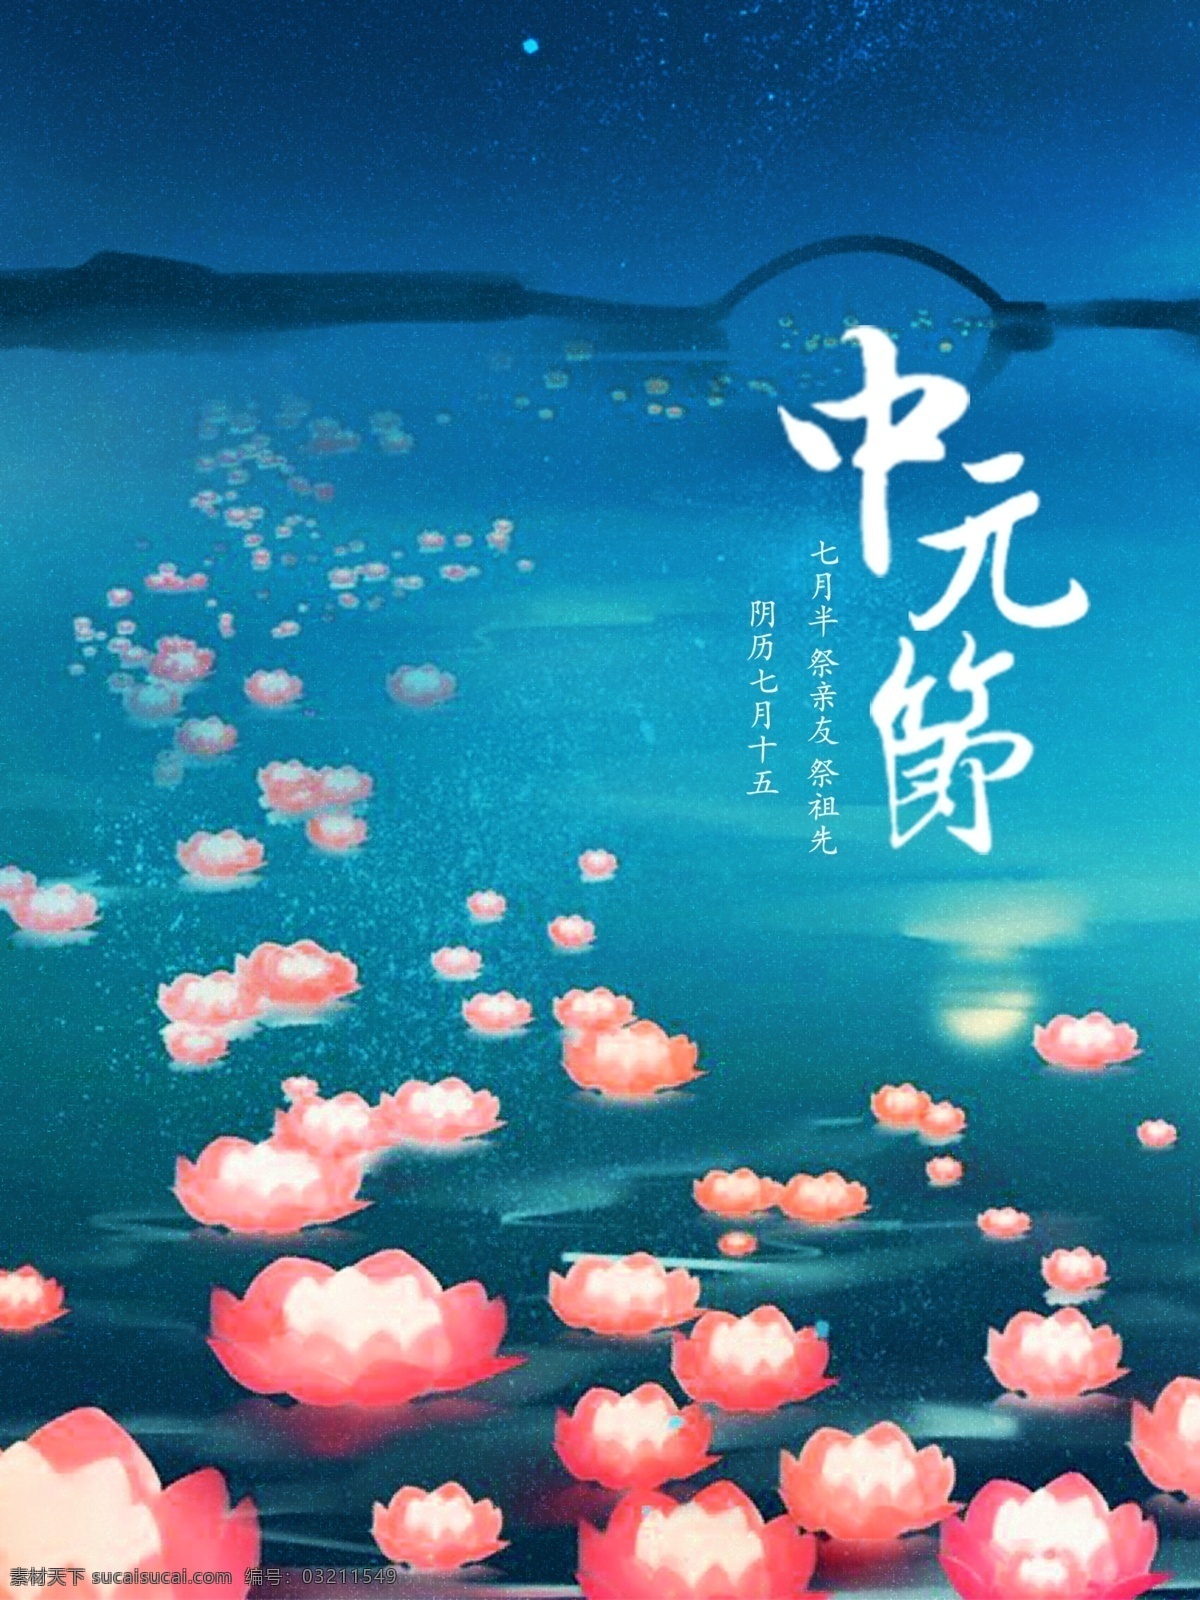 中元节 简约 宣传海报 节日 宣传 海报 祭拜 中国 传统 七月半